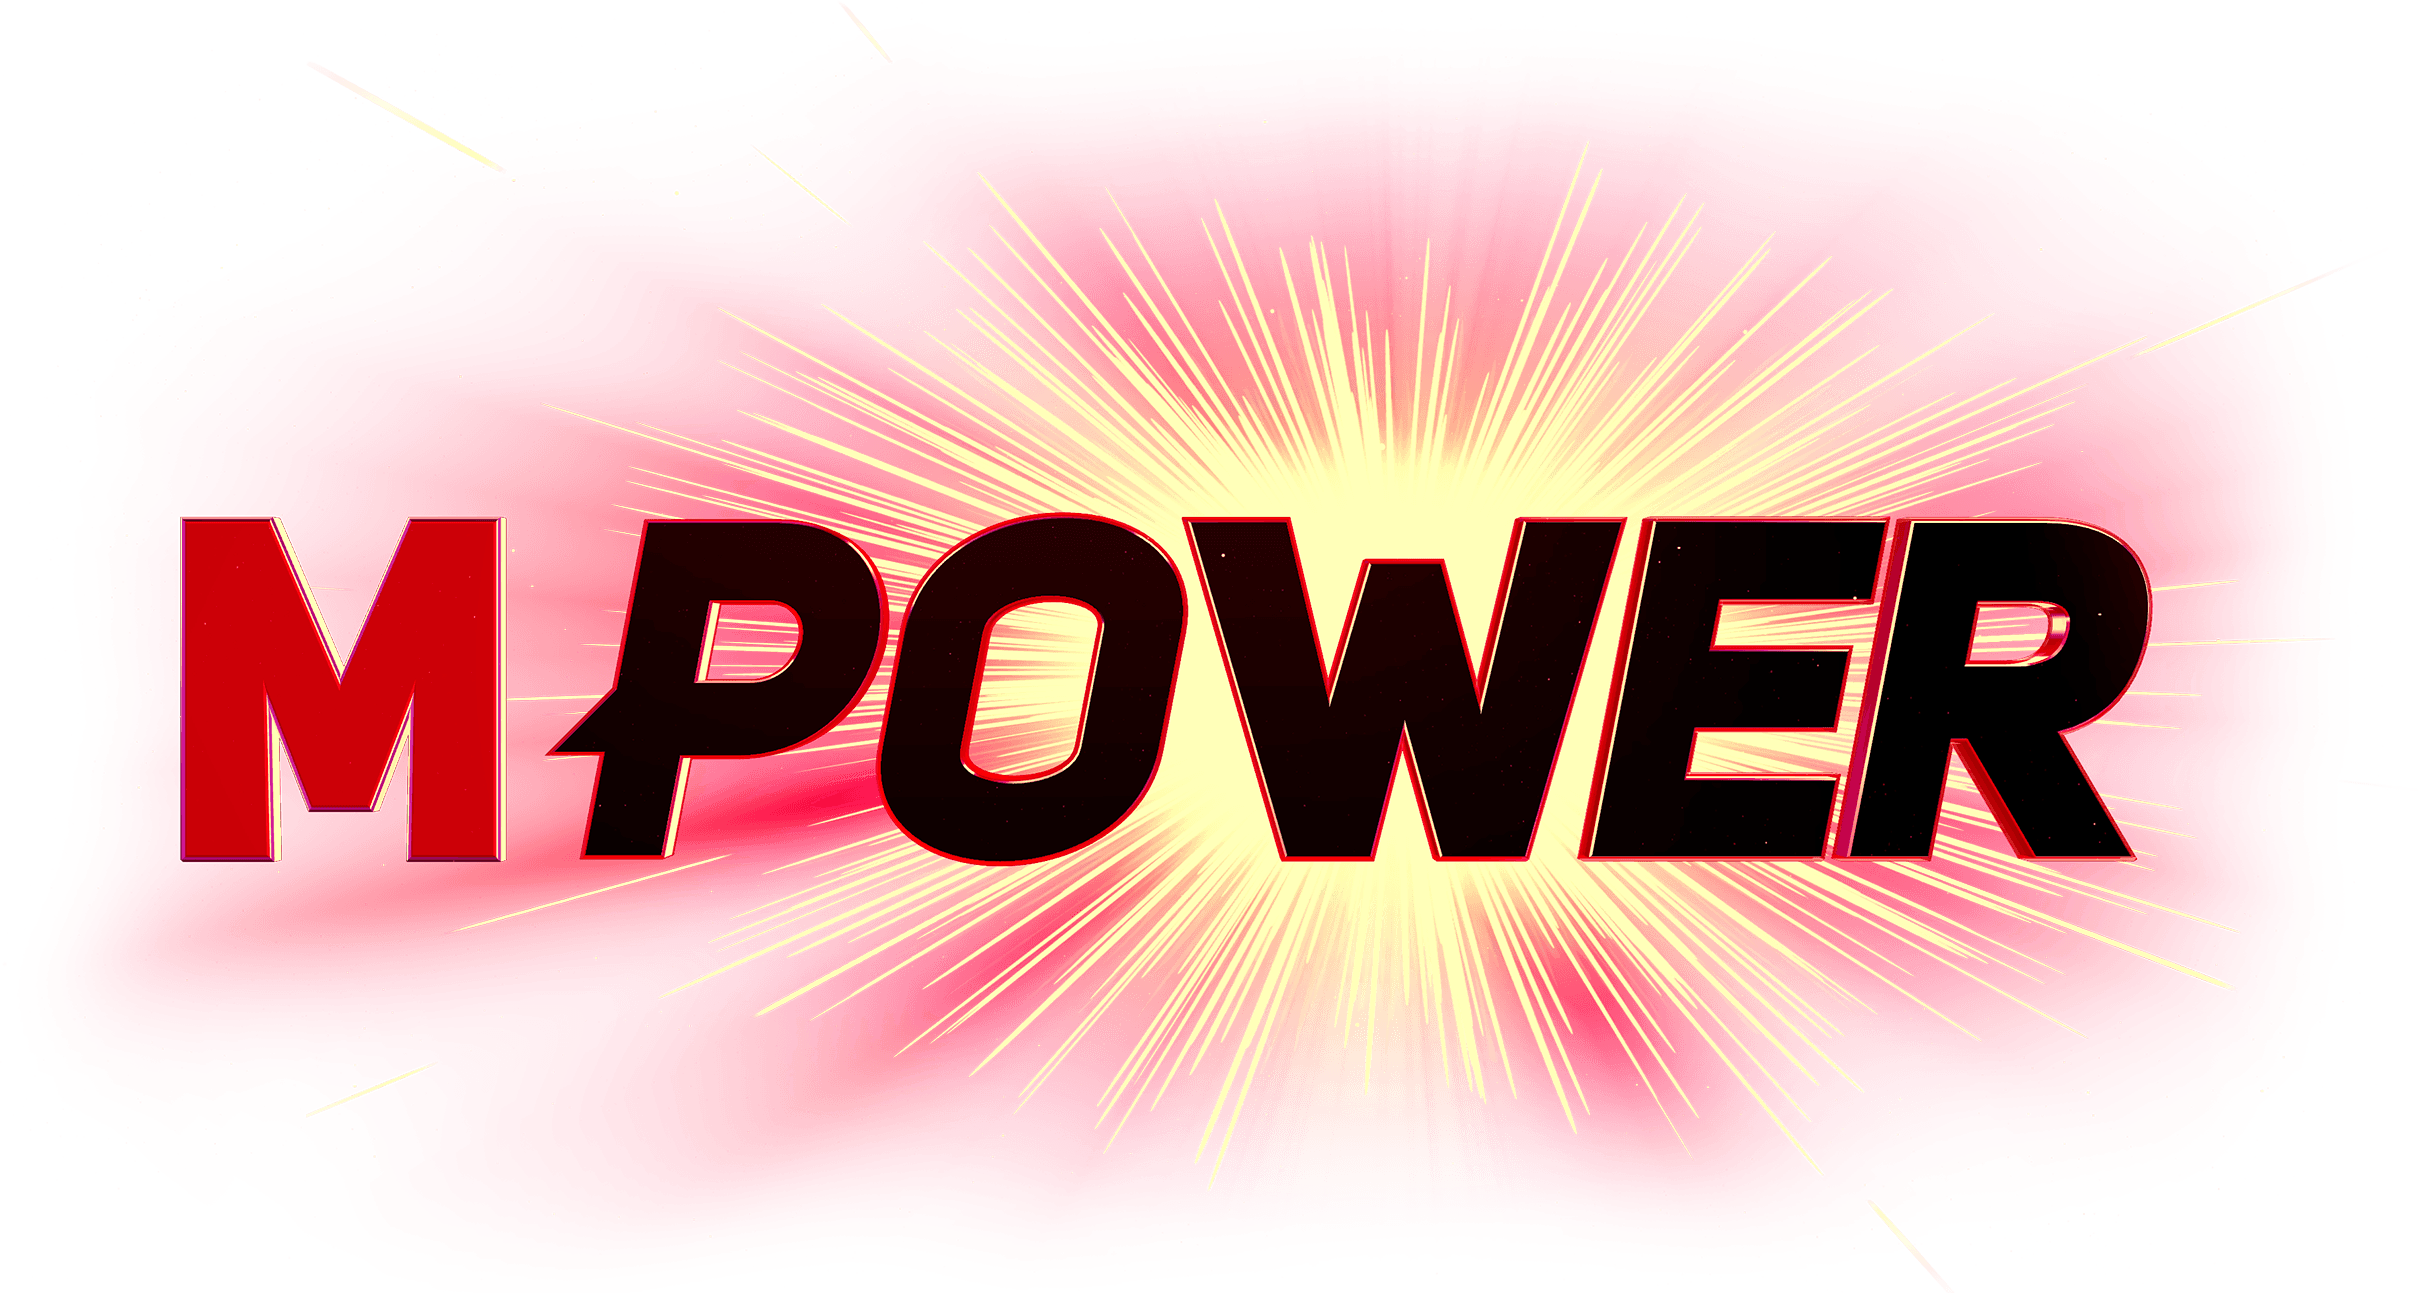 MPower logo